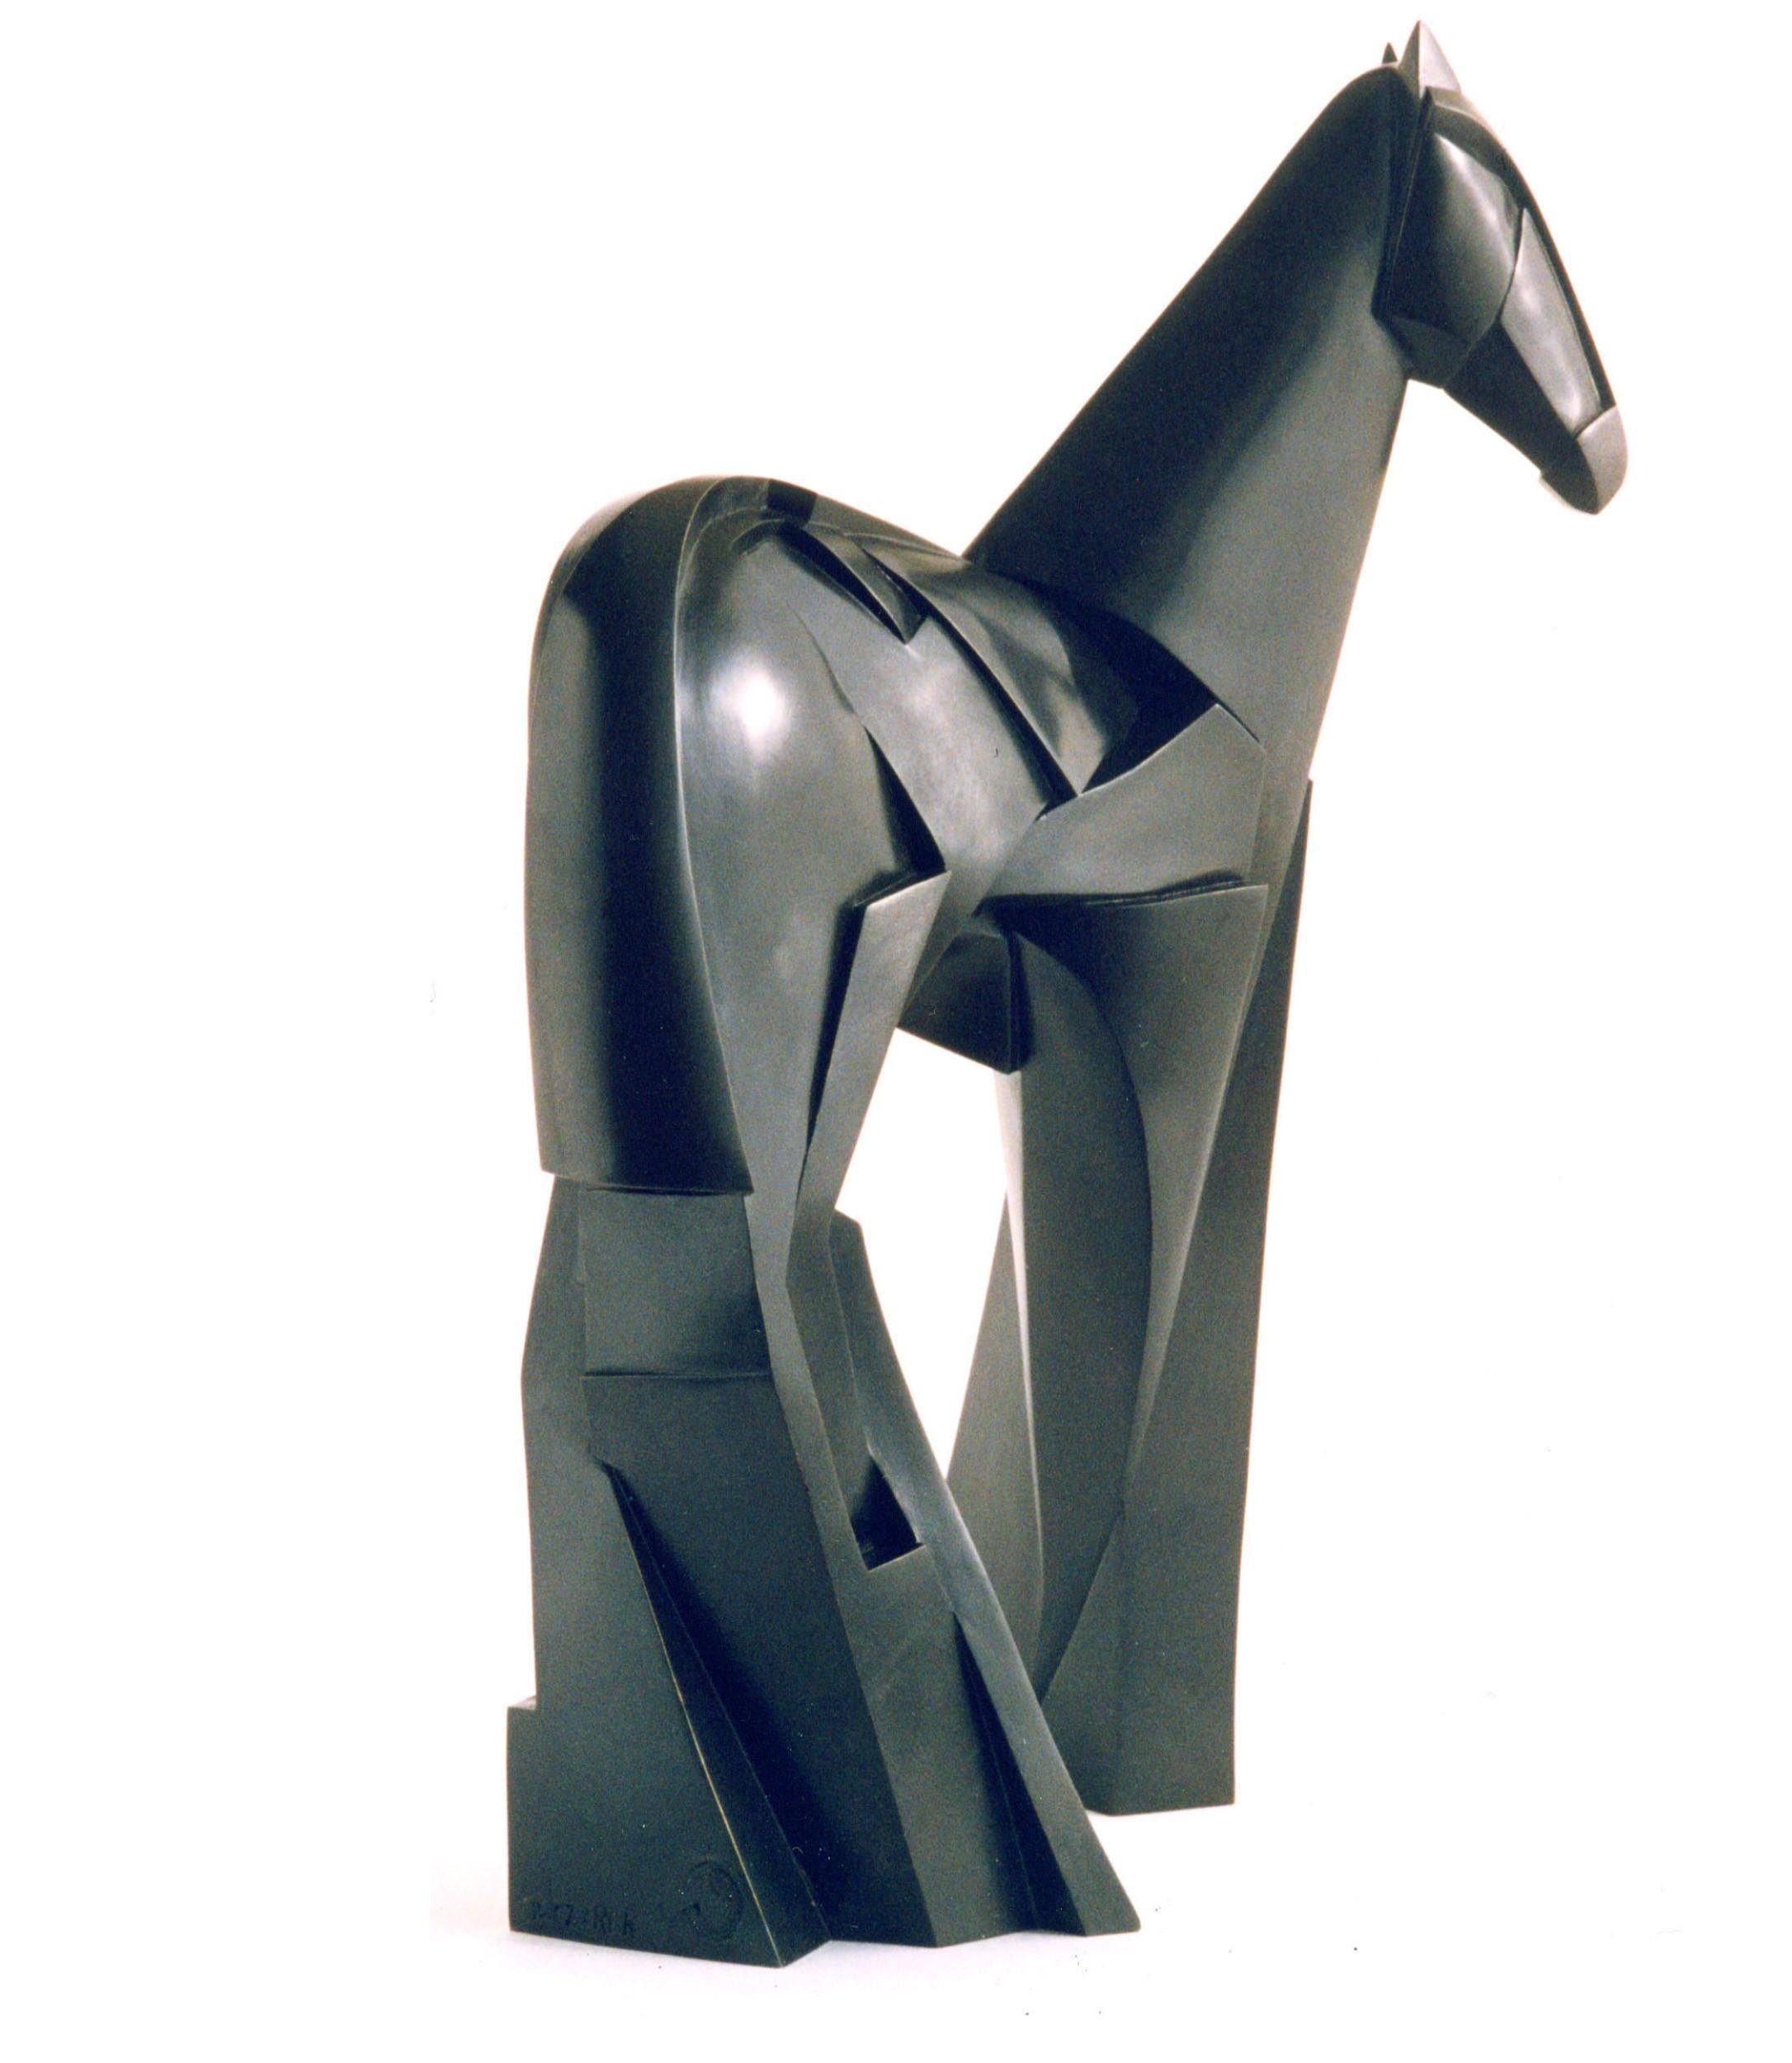 Xsakioro est une sculpture en bronze de l'artiste contemporain Jacques Owczarek, dont les dimensions sont de 94 × 65 × 47 cm (37 × 25,6 × 18,5 in). 
La sculpture est signée et numérotée, elle fait partie d'une édition limitée à 8 exemplaires + 4